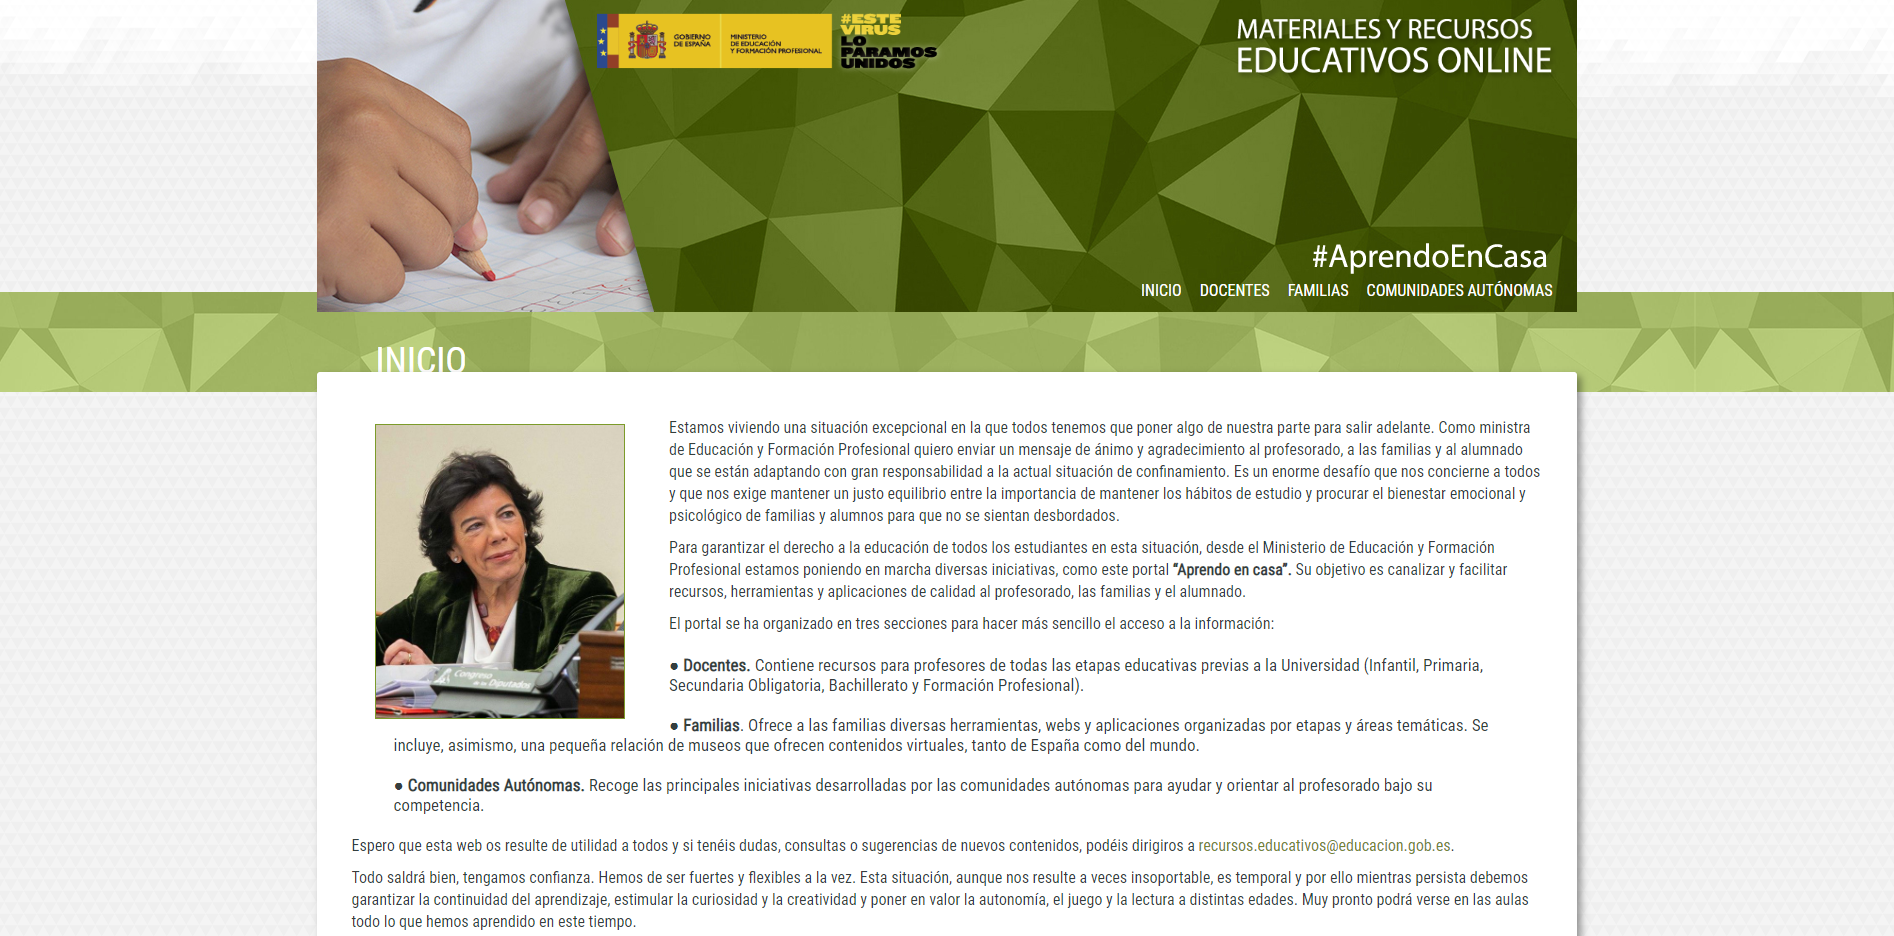 El Ministerio de Educación pone en marcha una web con contenido pedagógico